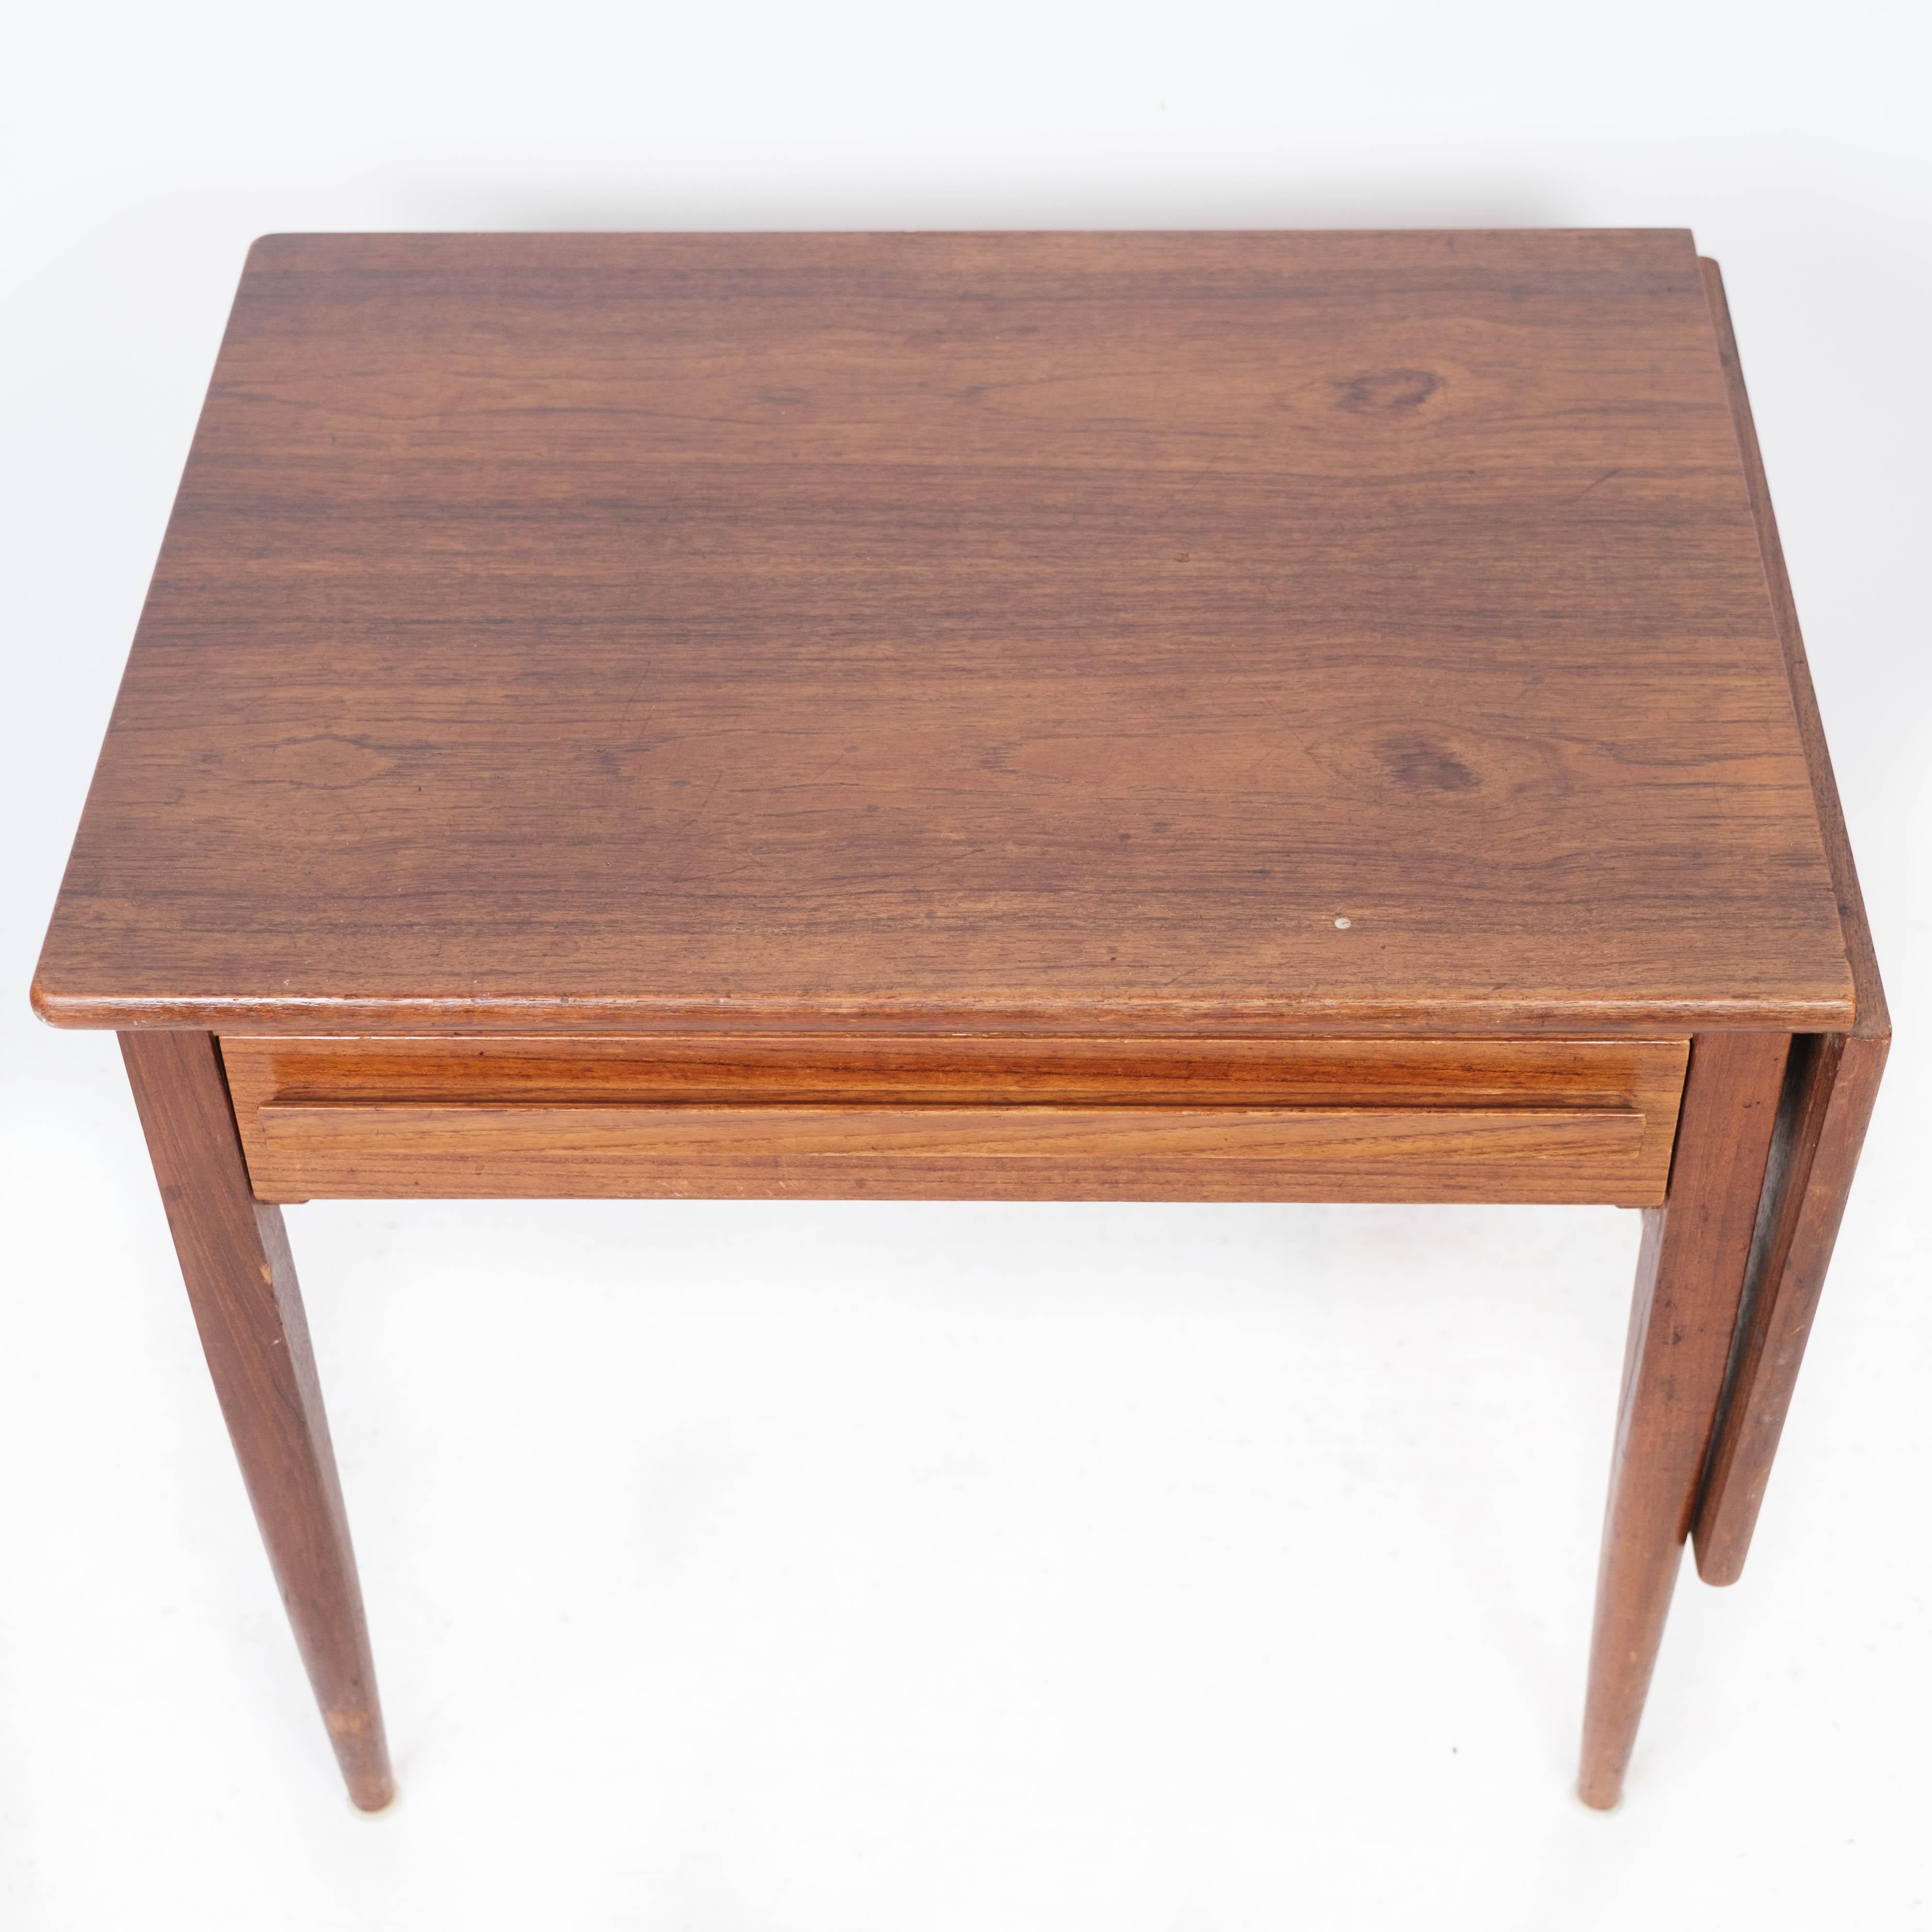 La table d'appoint à abattants, fabriquée en teck de design danois par Silkeborg Møbelfabrik dans les années 1960, est un meuble charmant et fonctionnel au look scandinave classique.

Les tons chauds du bois de teck et son magnifique motif naturel